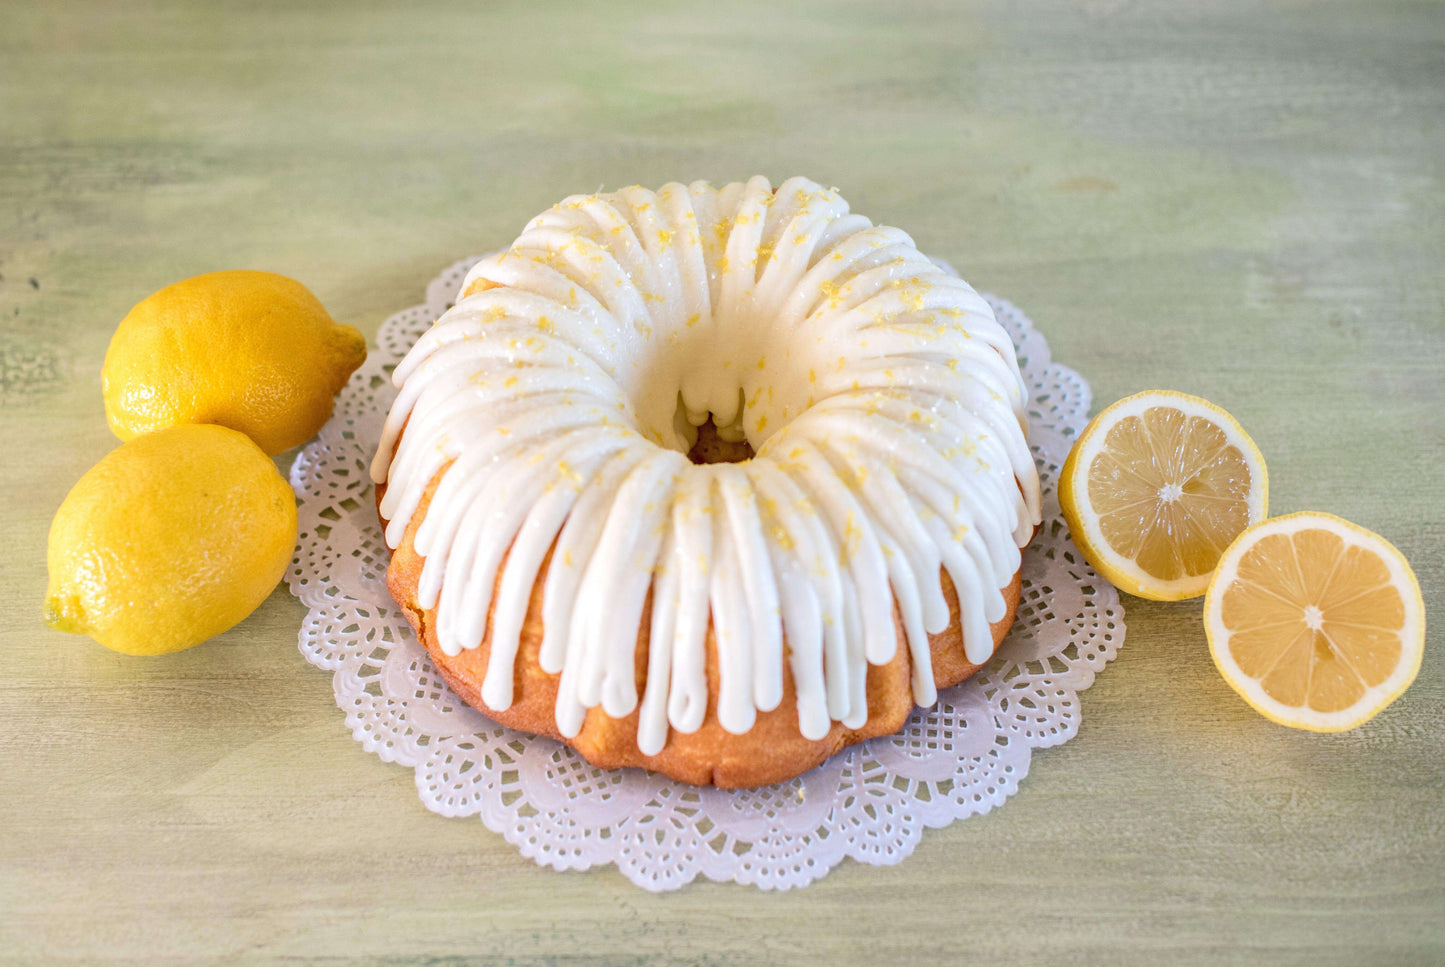 Lemon Squeeze Big Bundt Cake-Bundt Cakes-8" Big Bundt (serves 5-7)-